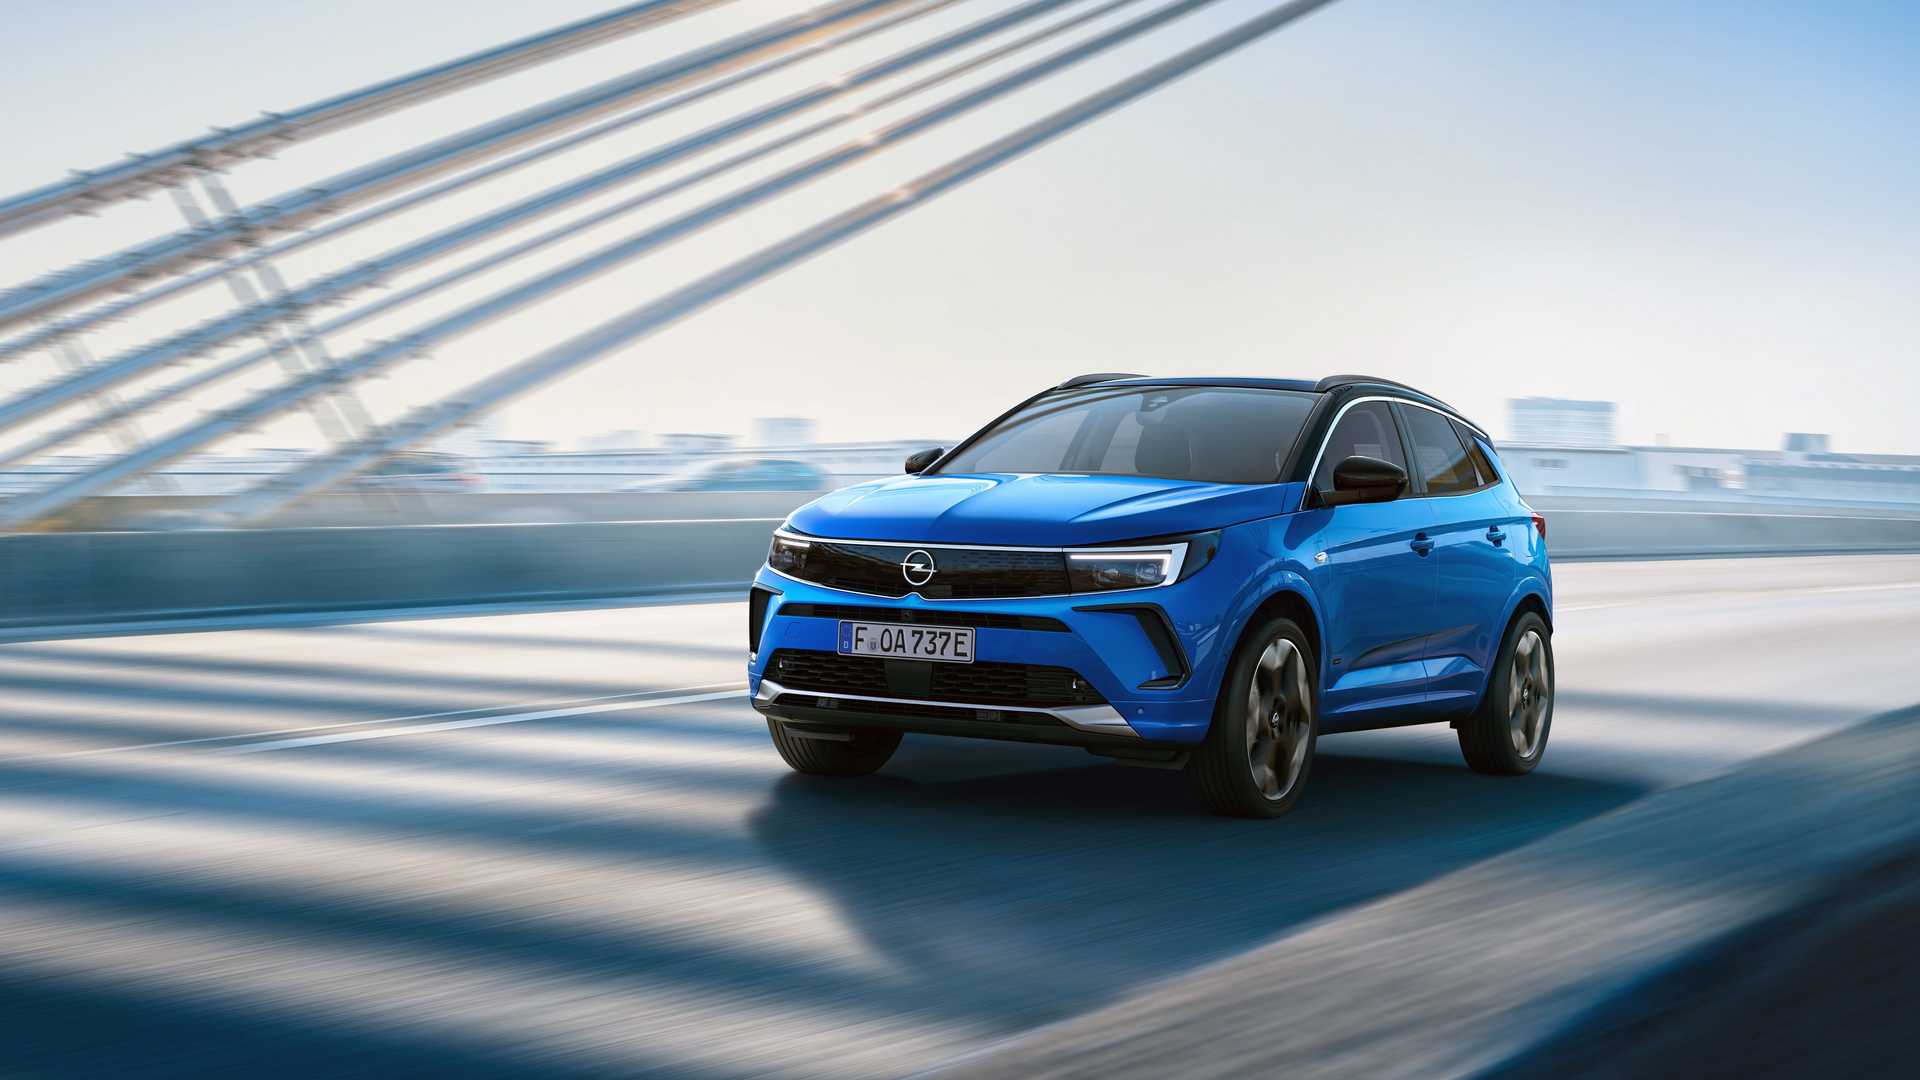 نمای فیس لیفت کراس اور اوپل گرندلند 2022 / 2022 Opel Grandland crossover آبی رنگ در جاده